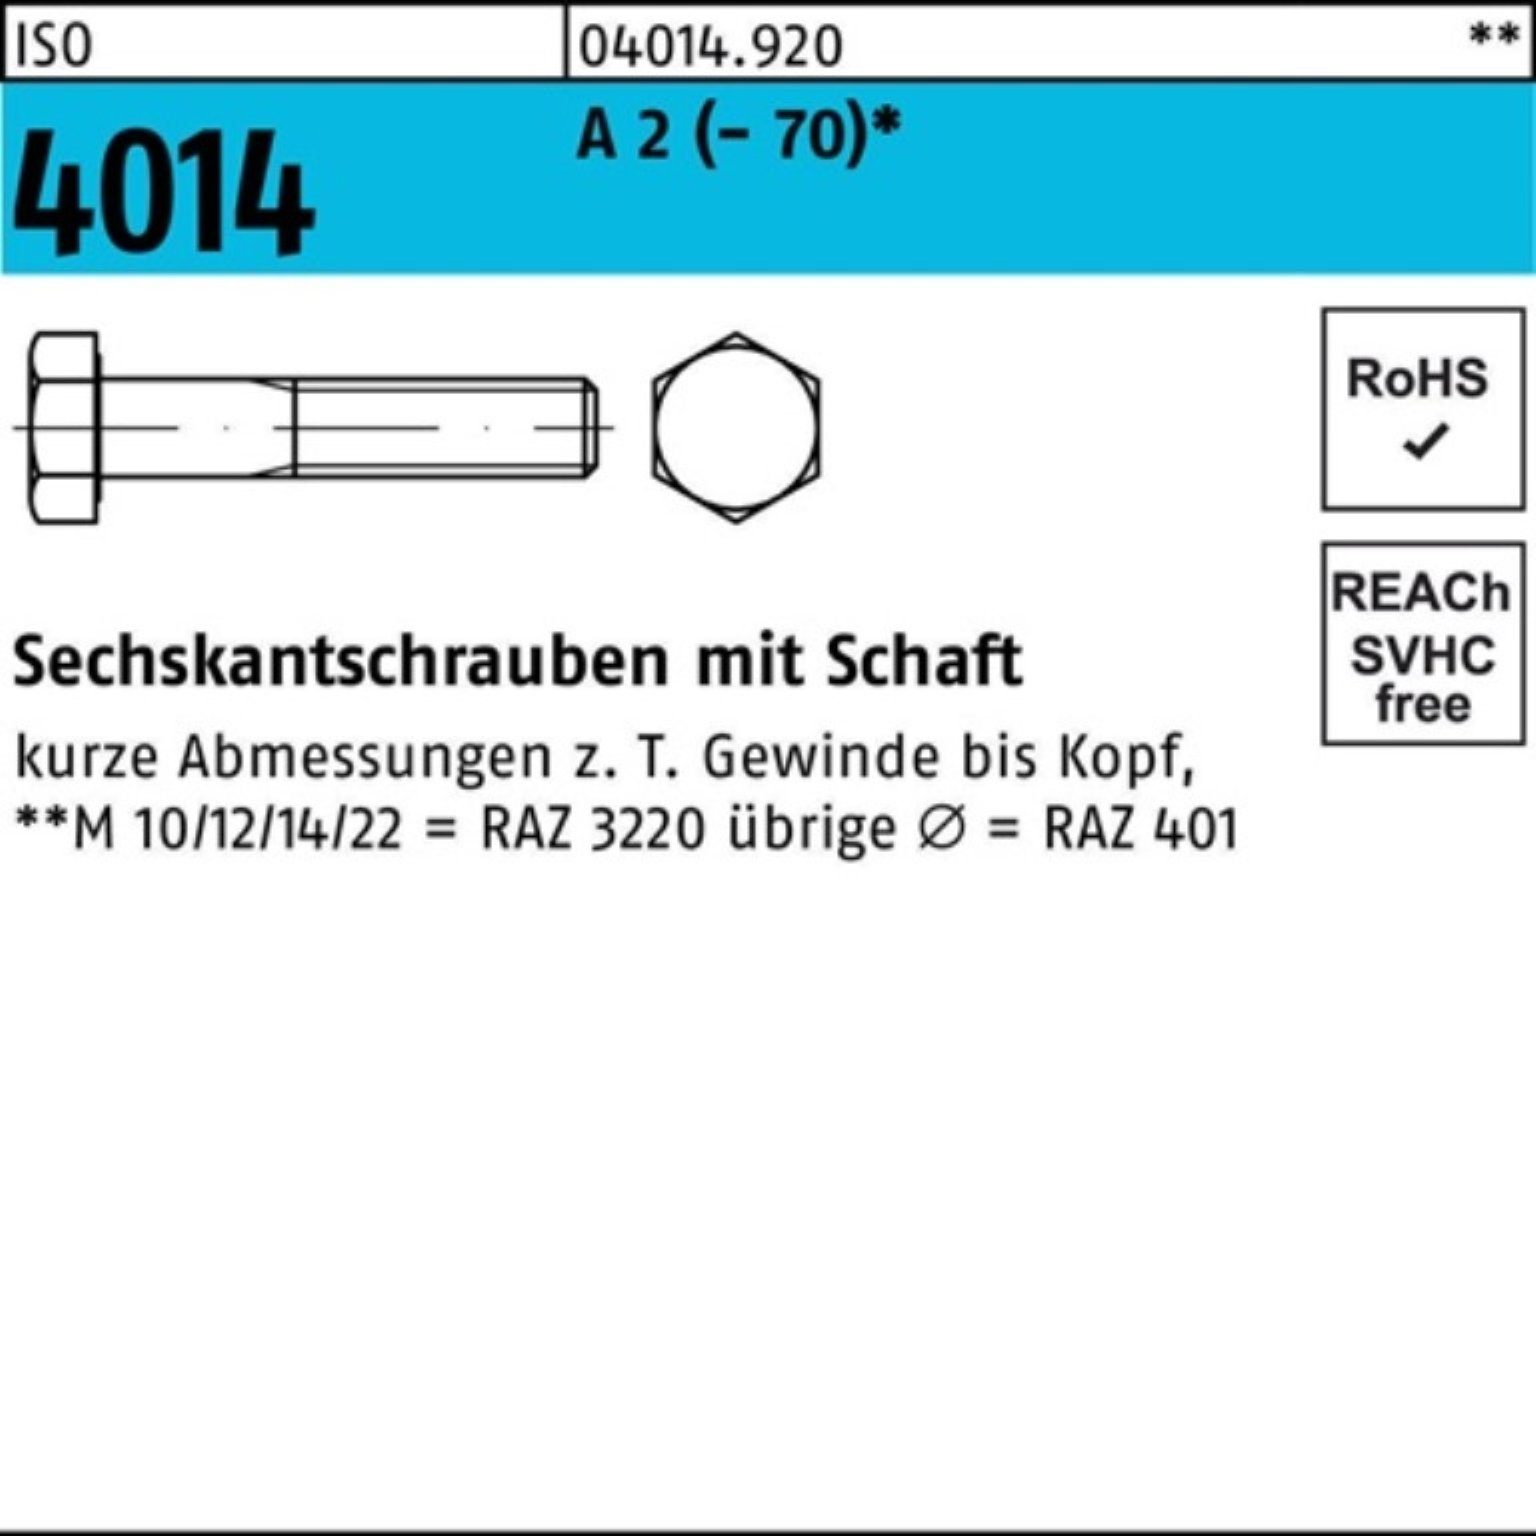 Bufab Sechskantschraube 100er Pack Sechskantschraube ISO 4014 Schaft M20x 250 A 2 (70) 1 St